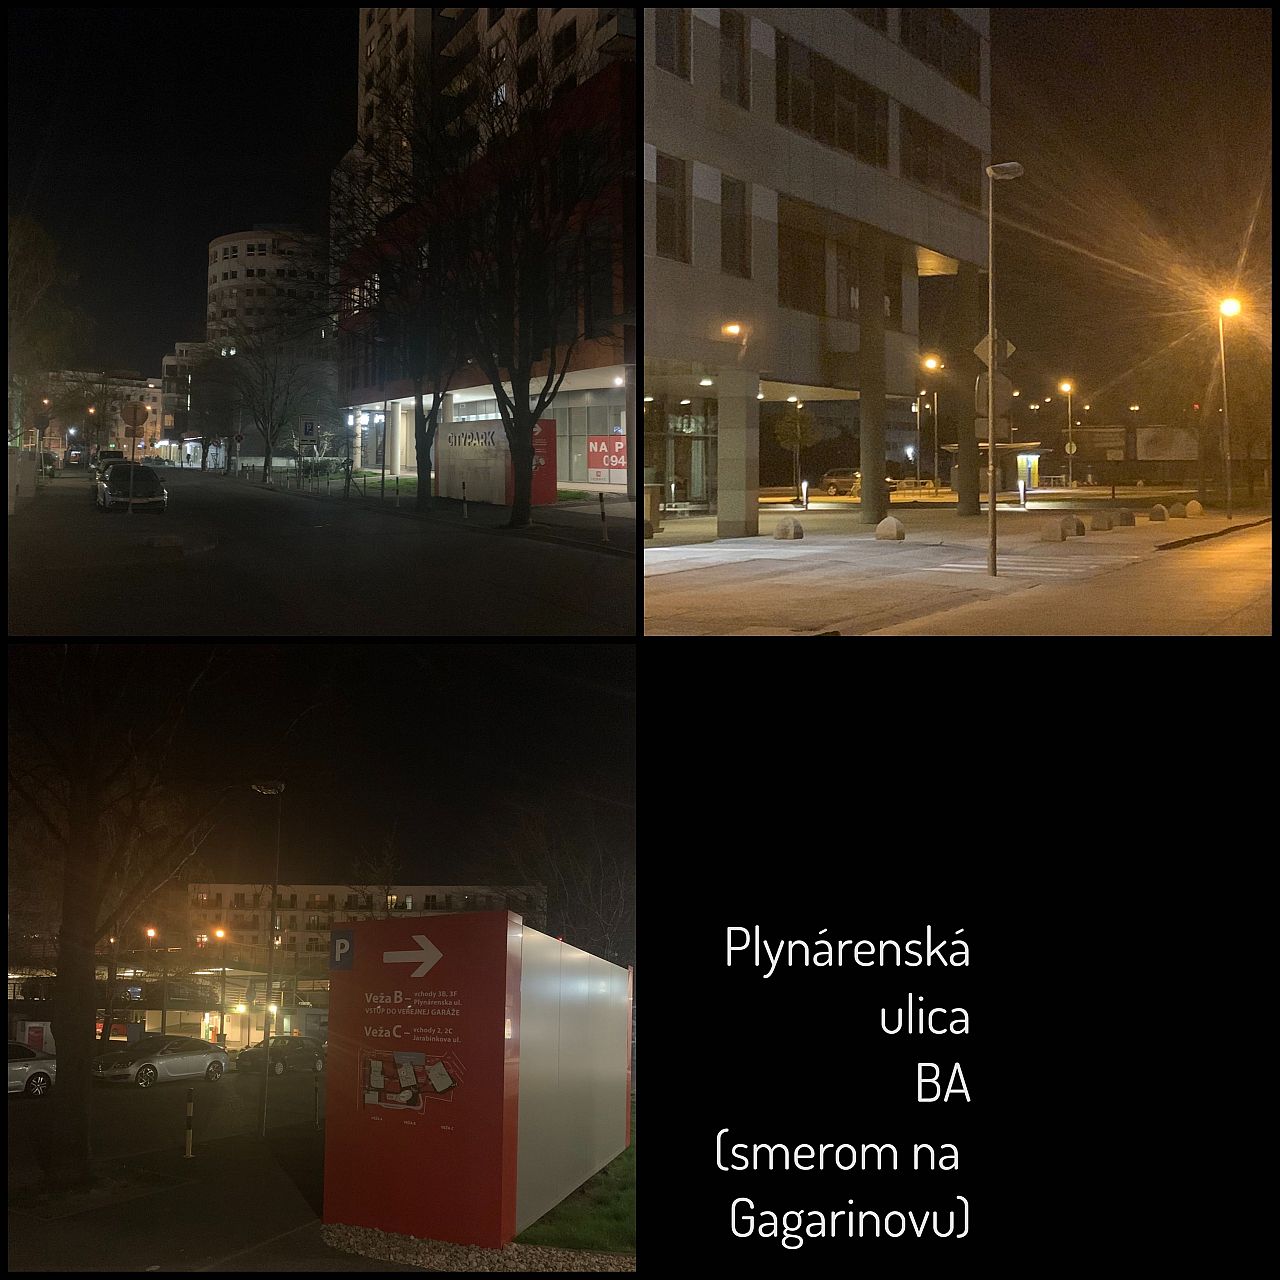 Plynárenská-osvetlenie-nefunkčné, Ružinov, Bratislava | Odkazprestarostu.sk